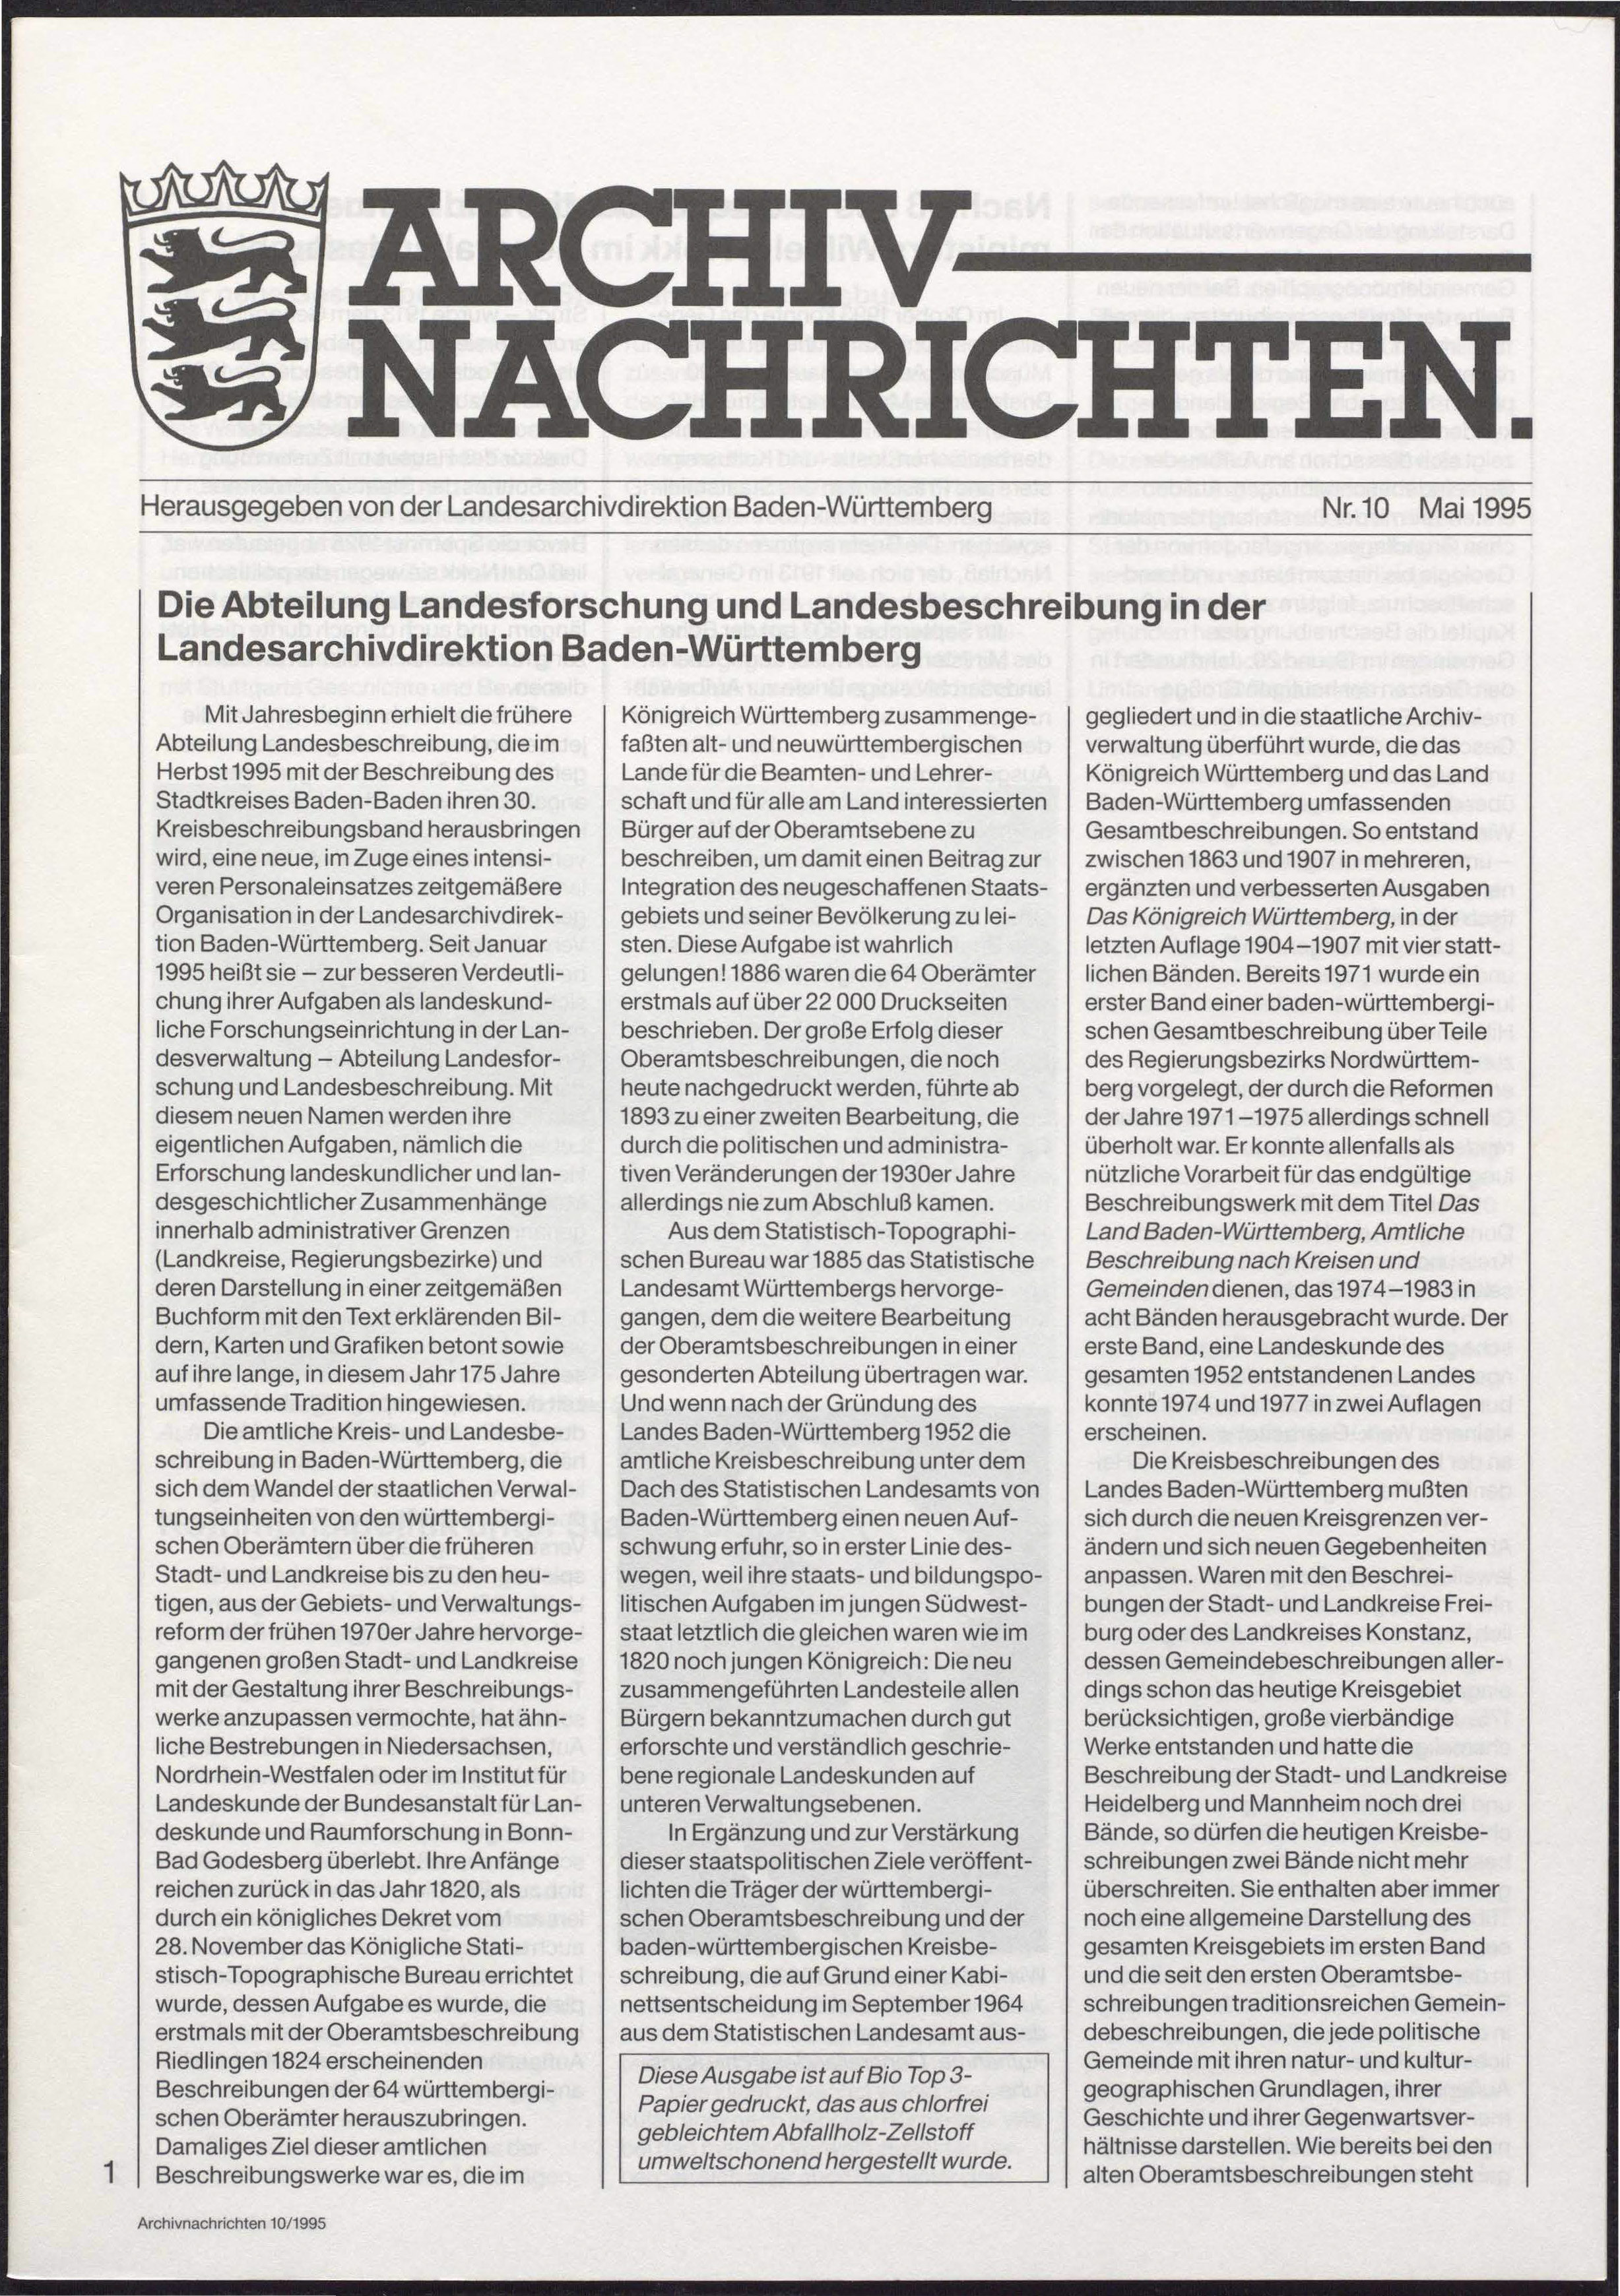                     Ansehen Nr. 10 (1995): Archivnachrichten
                